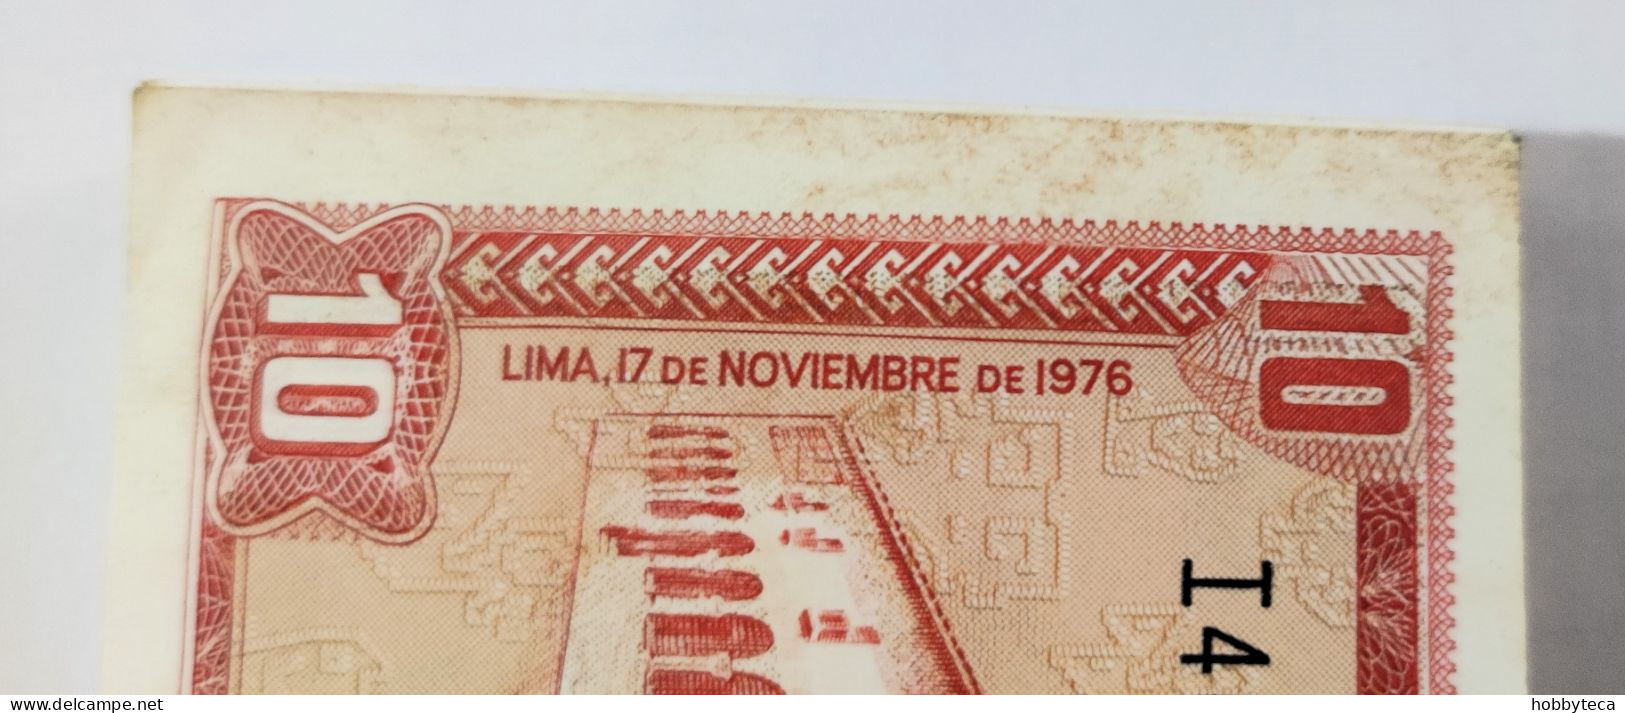 PERU - FULL ORIGINAL BUNDLE 10 SOLES 1976 INCA & TITICACA SEA - 100 NOTES FEW WITH HUMIDITY SPOTS- CHEAPEST ON  DELCAMPE - Peru